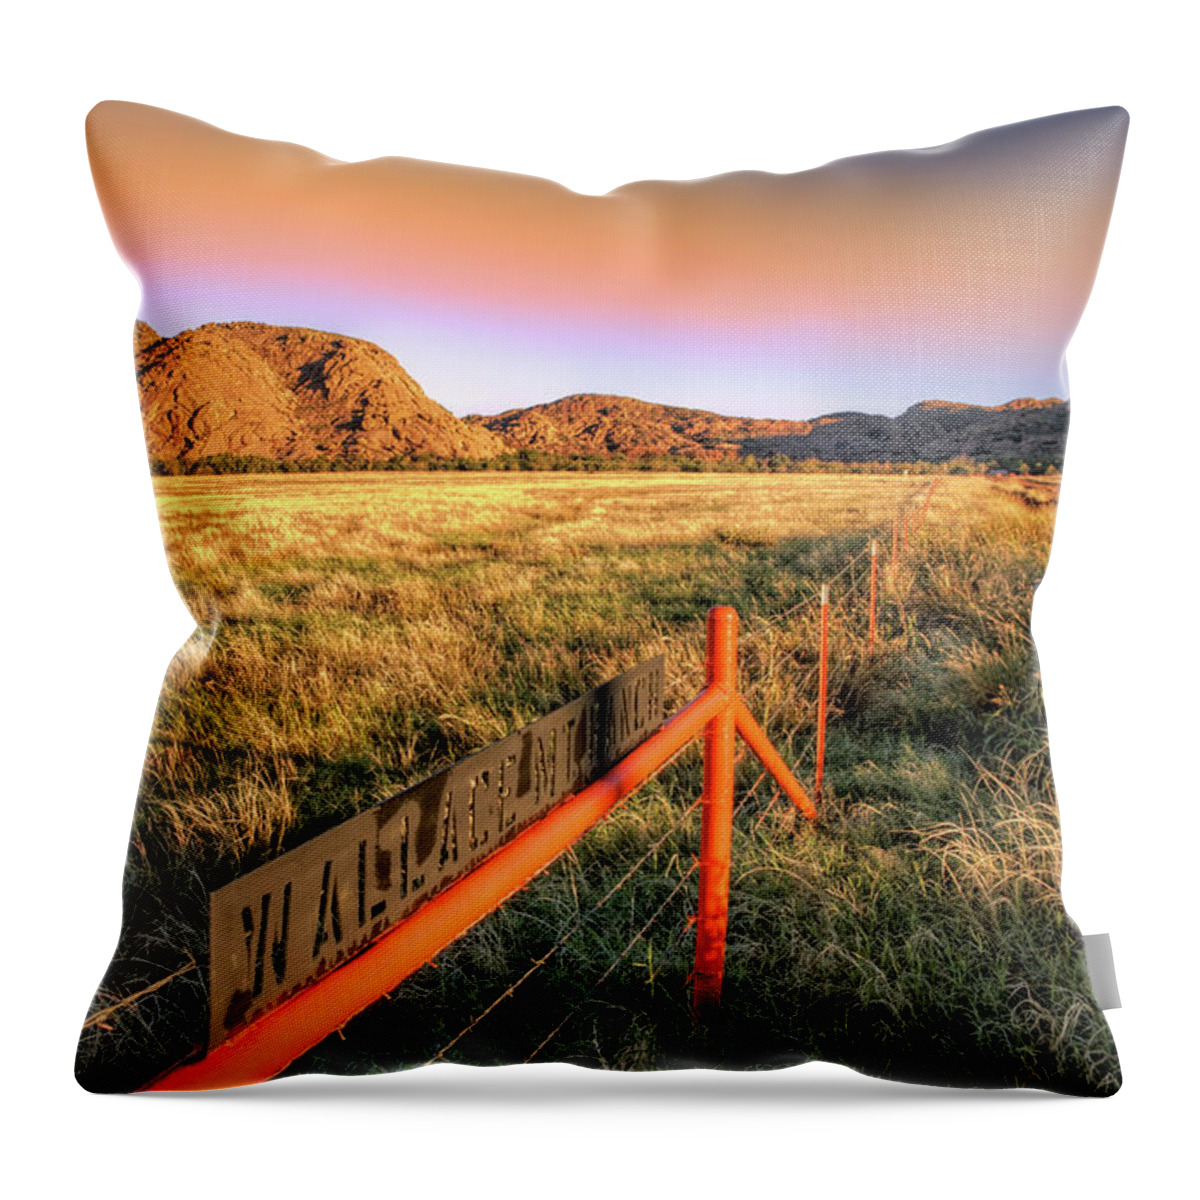 Oklahoma Throw Pillow featuring the photograph Orange Sky over Wallace Mountain - Quartz Mountains - Oklahoma by Jason Politte